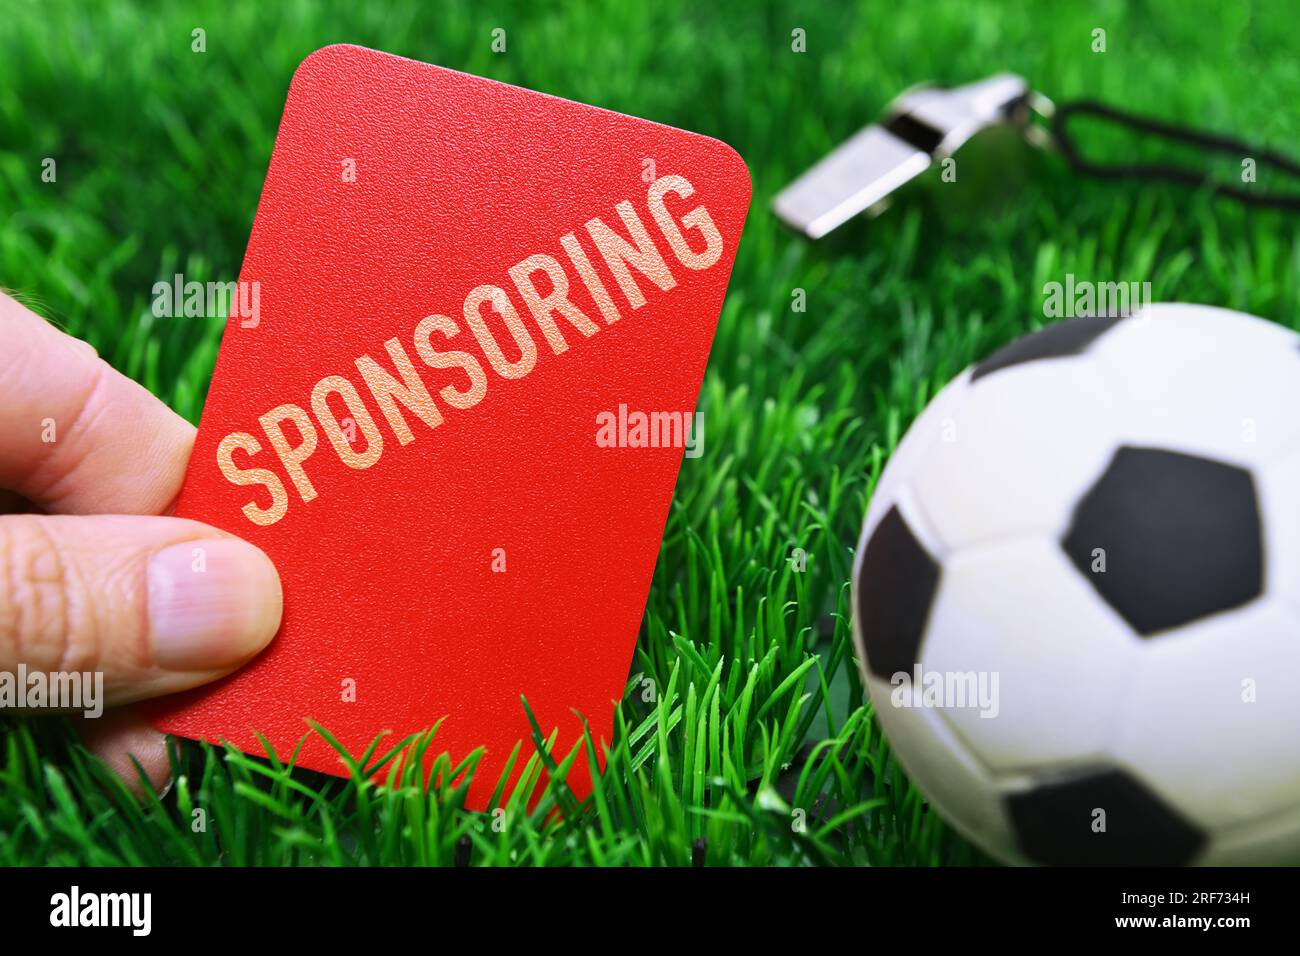 FOTOMONTAGE, Hand hält rote Karte mit Aufschrift sponsoring auf Fußballrasen, Symbolfoto Kündigung von Sponsoring-Verträgen Banque D'Images